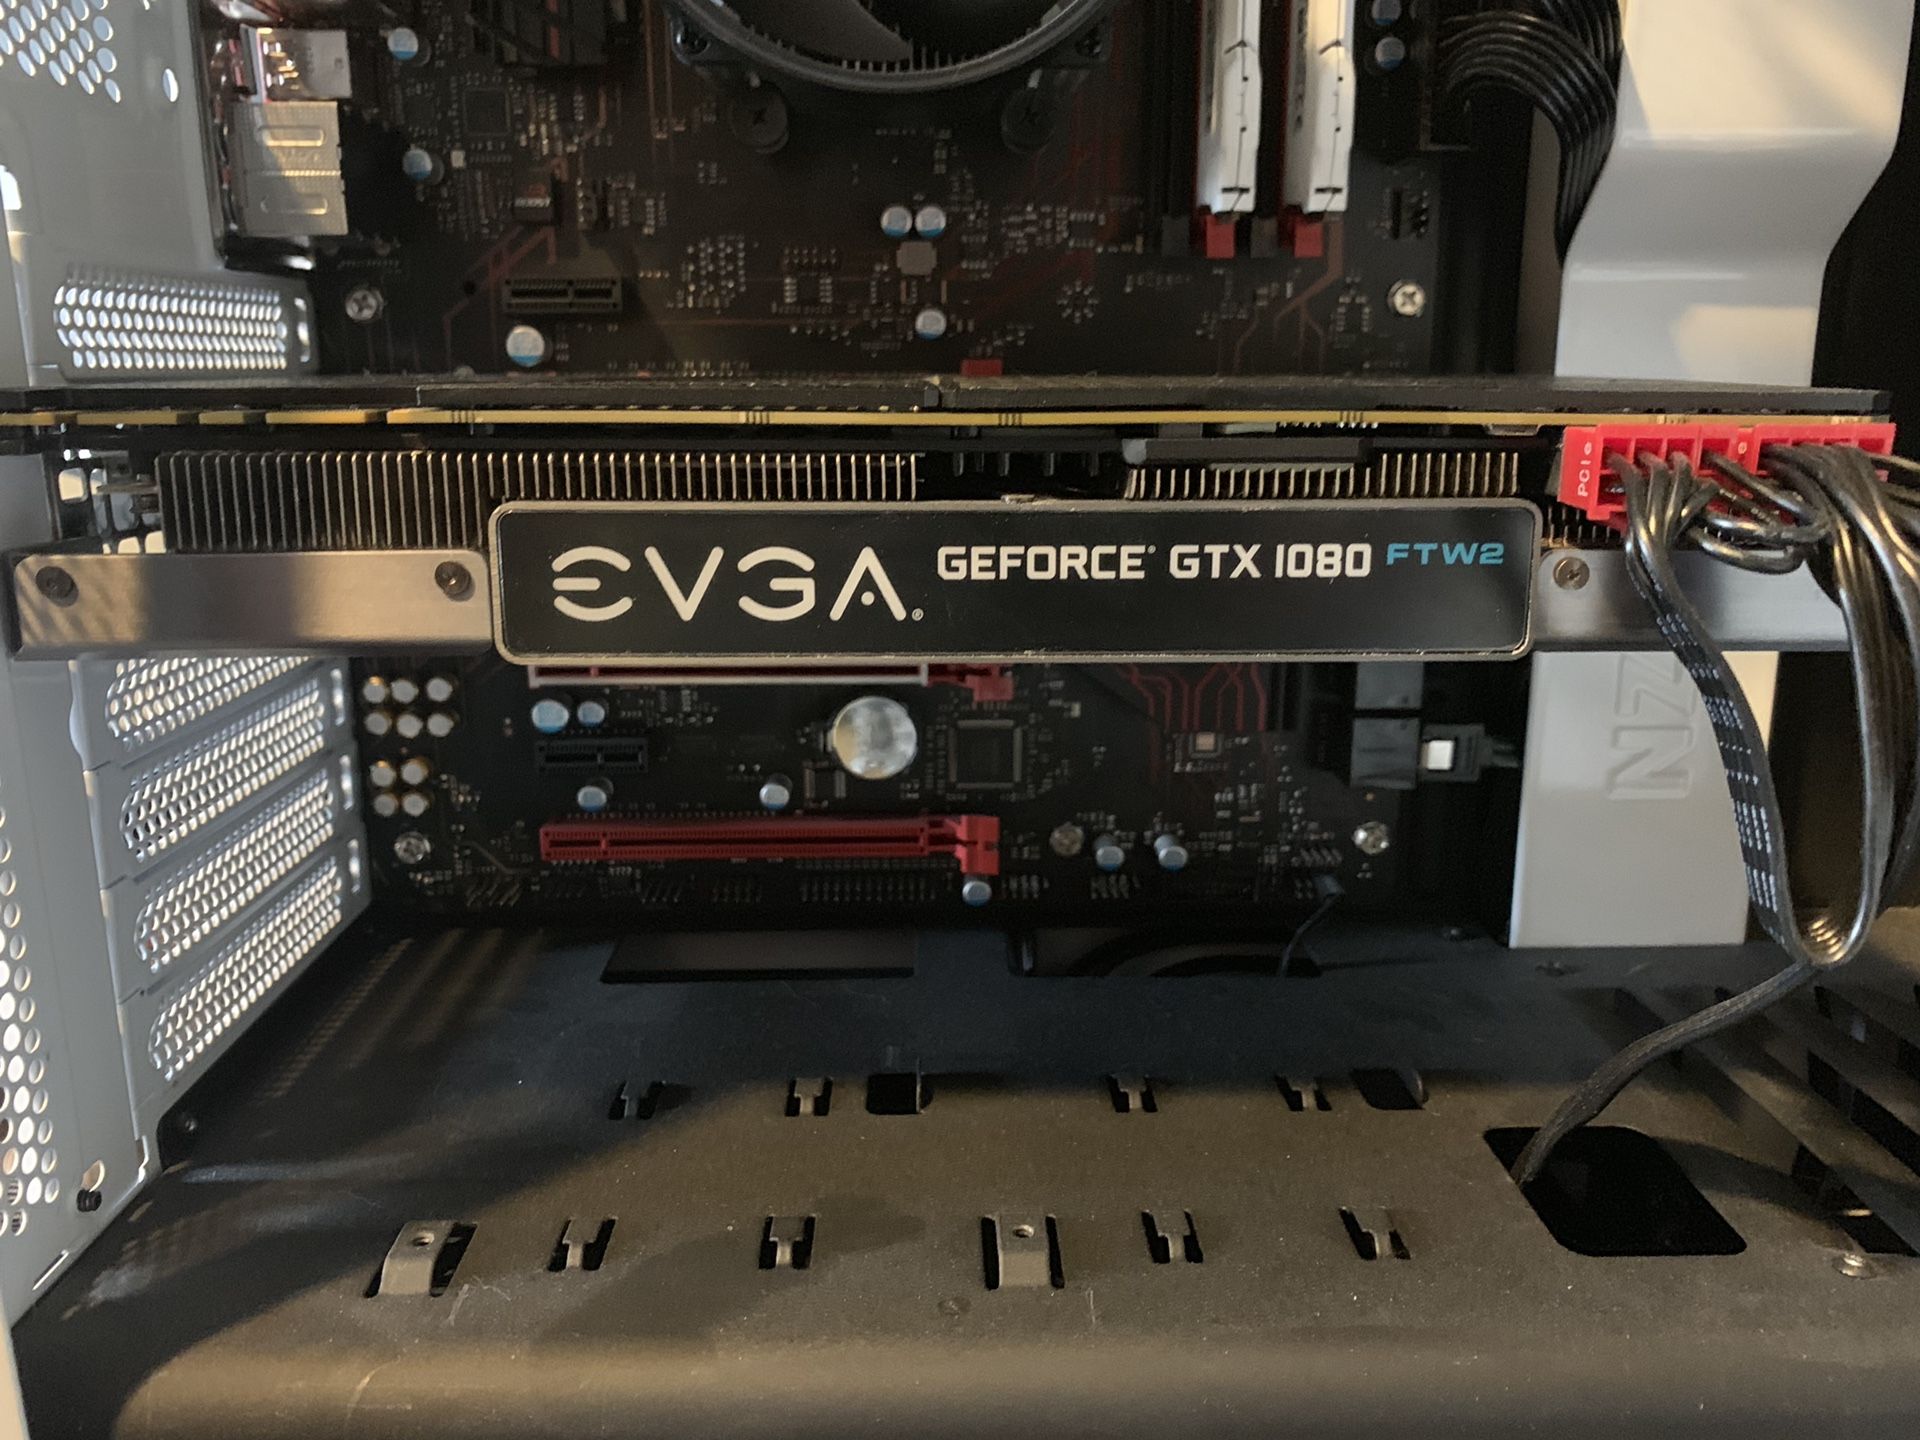 EVGA GeForce GTX 1080 FTW2!